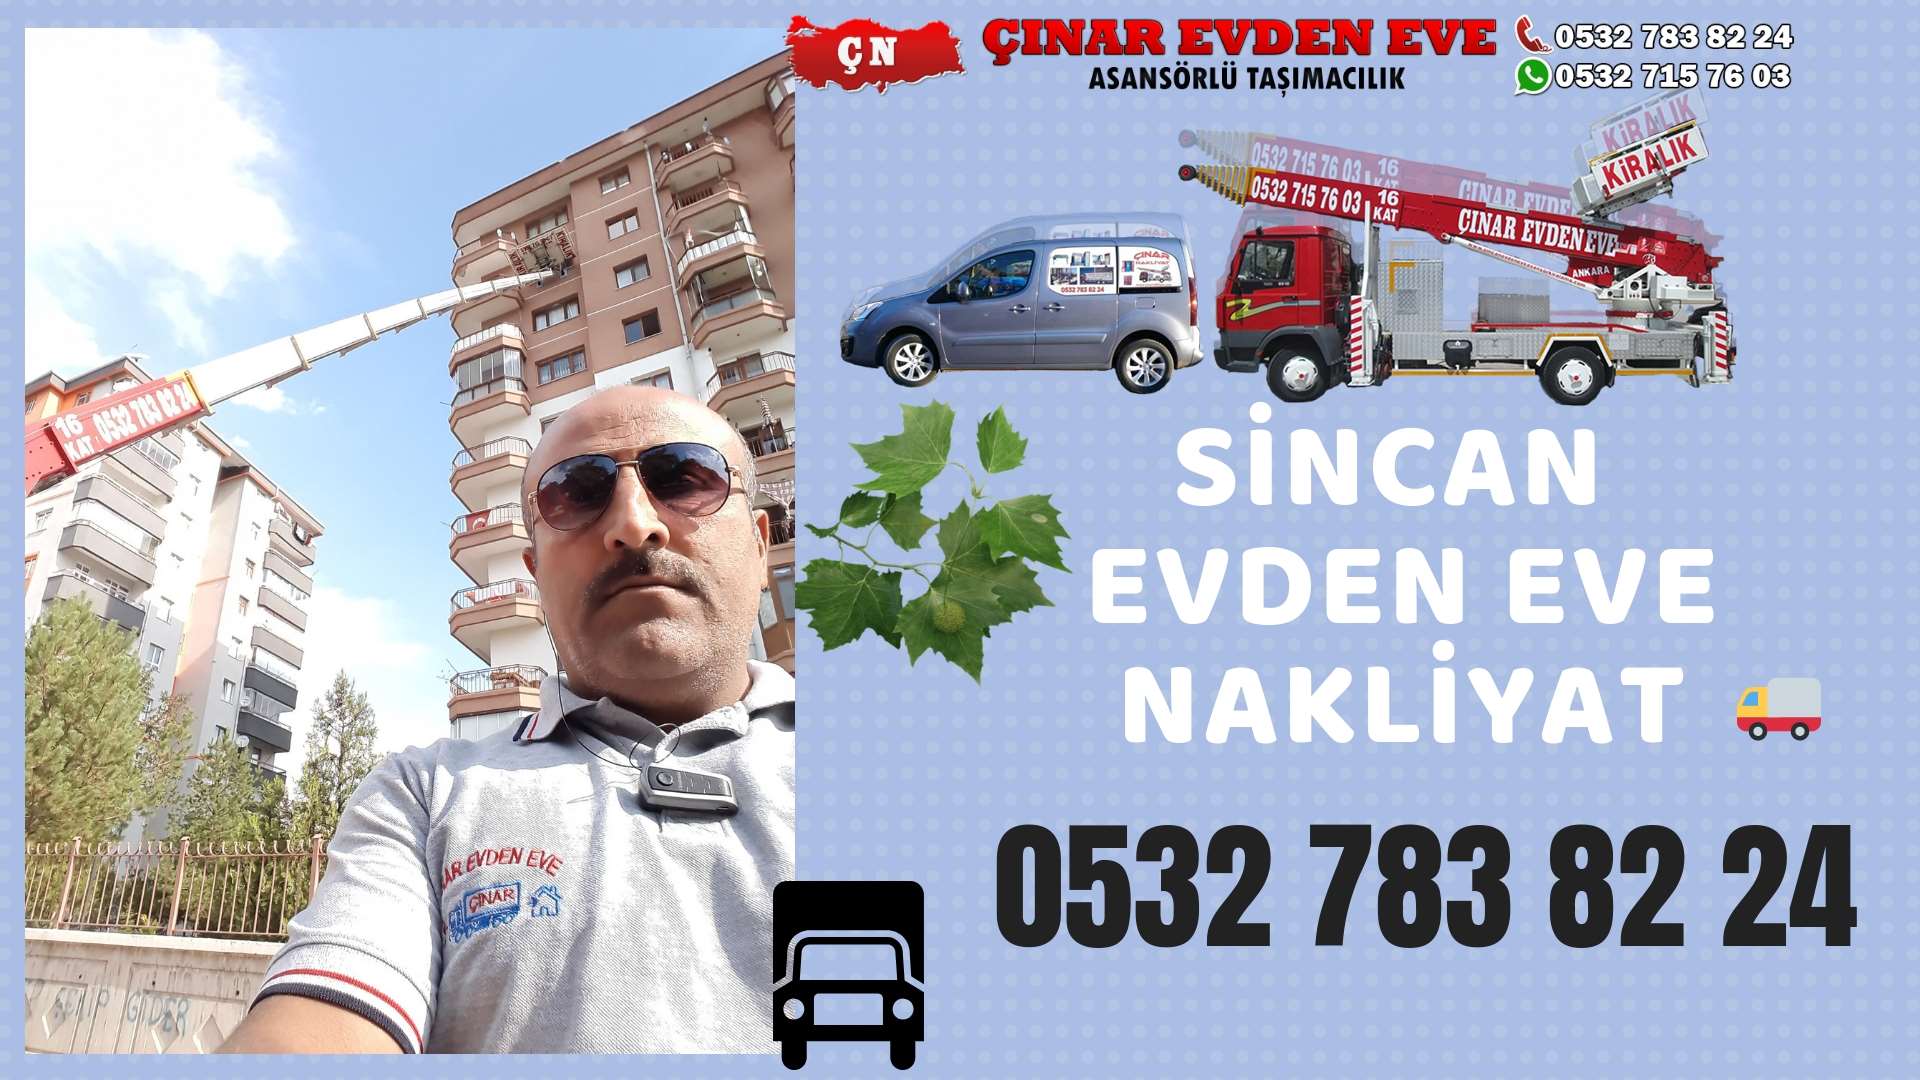 Ankara İvogsan Evden Eve Nakliyat, Asansörlü Taşımacılık, Ofis / İş Yeri Taşıma 0532 715 76 03